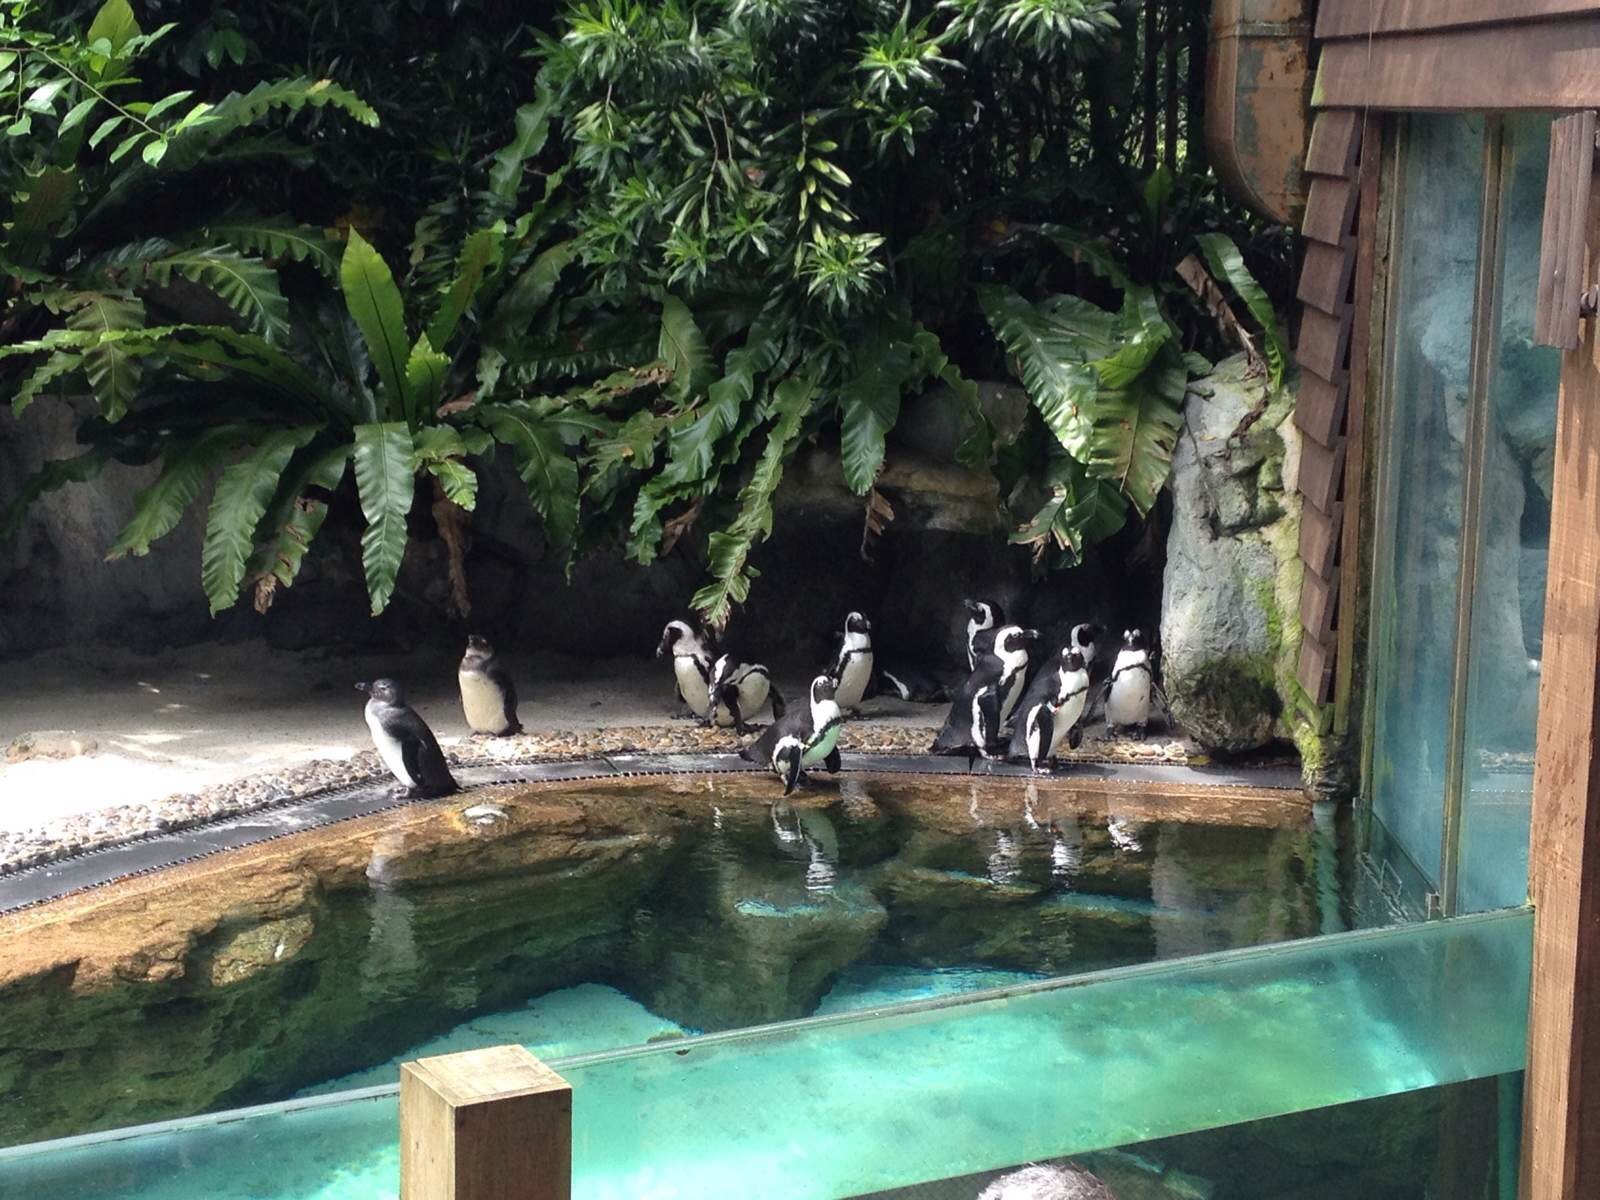 萌物—企鹅登场了 新加坡动物园